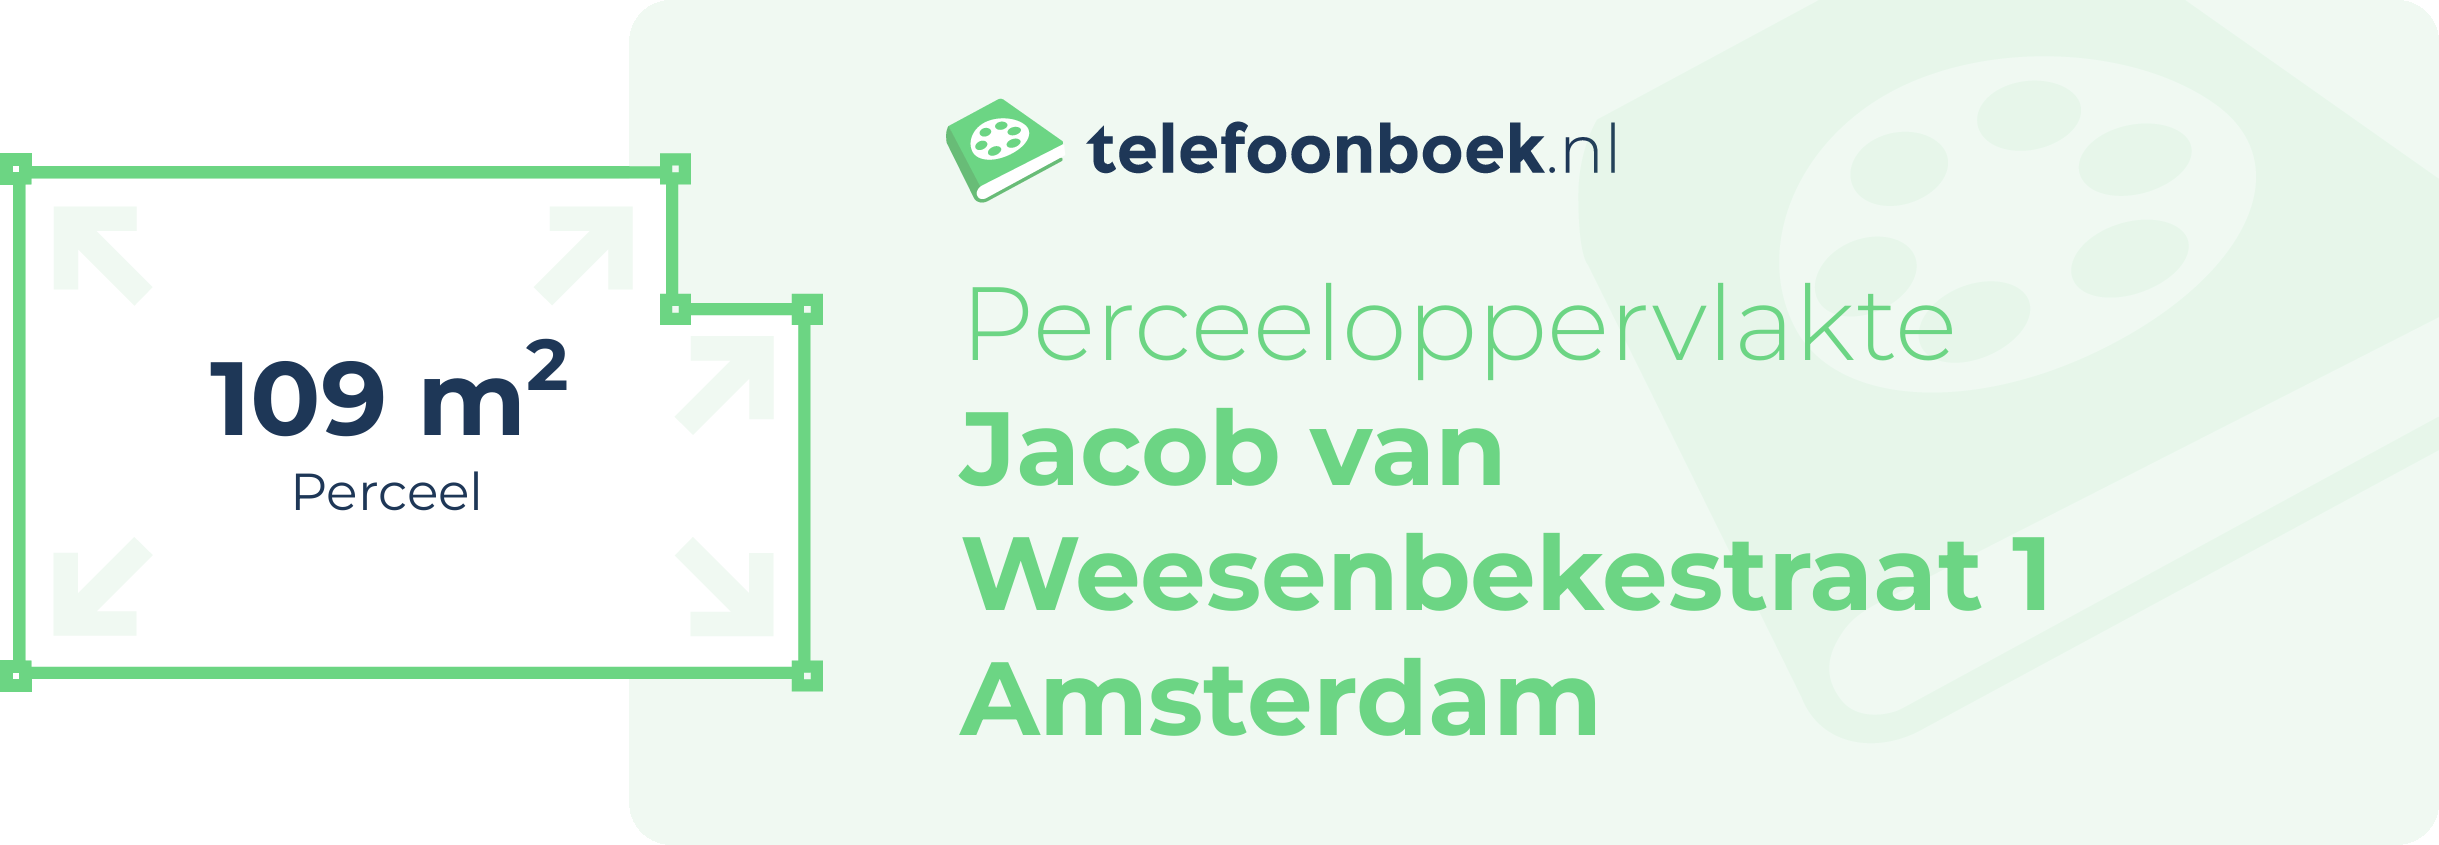 Perceeloppervlakte Jacob Van Weesenbekestraat 1 Amsterdam